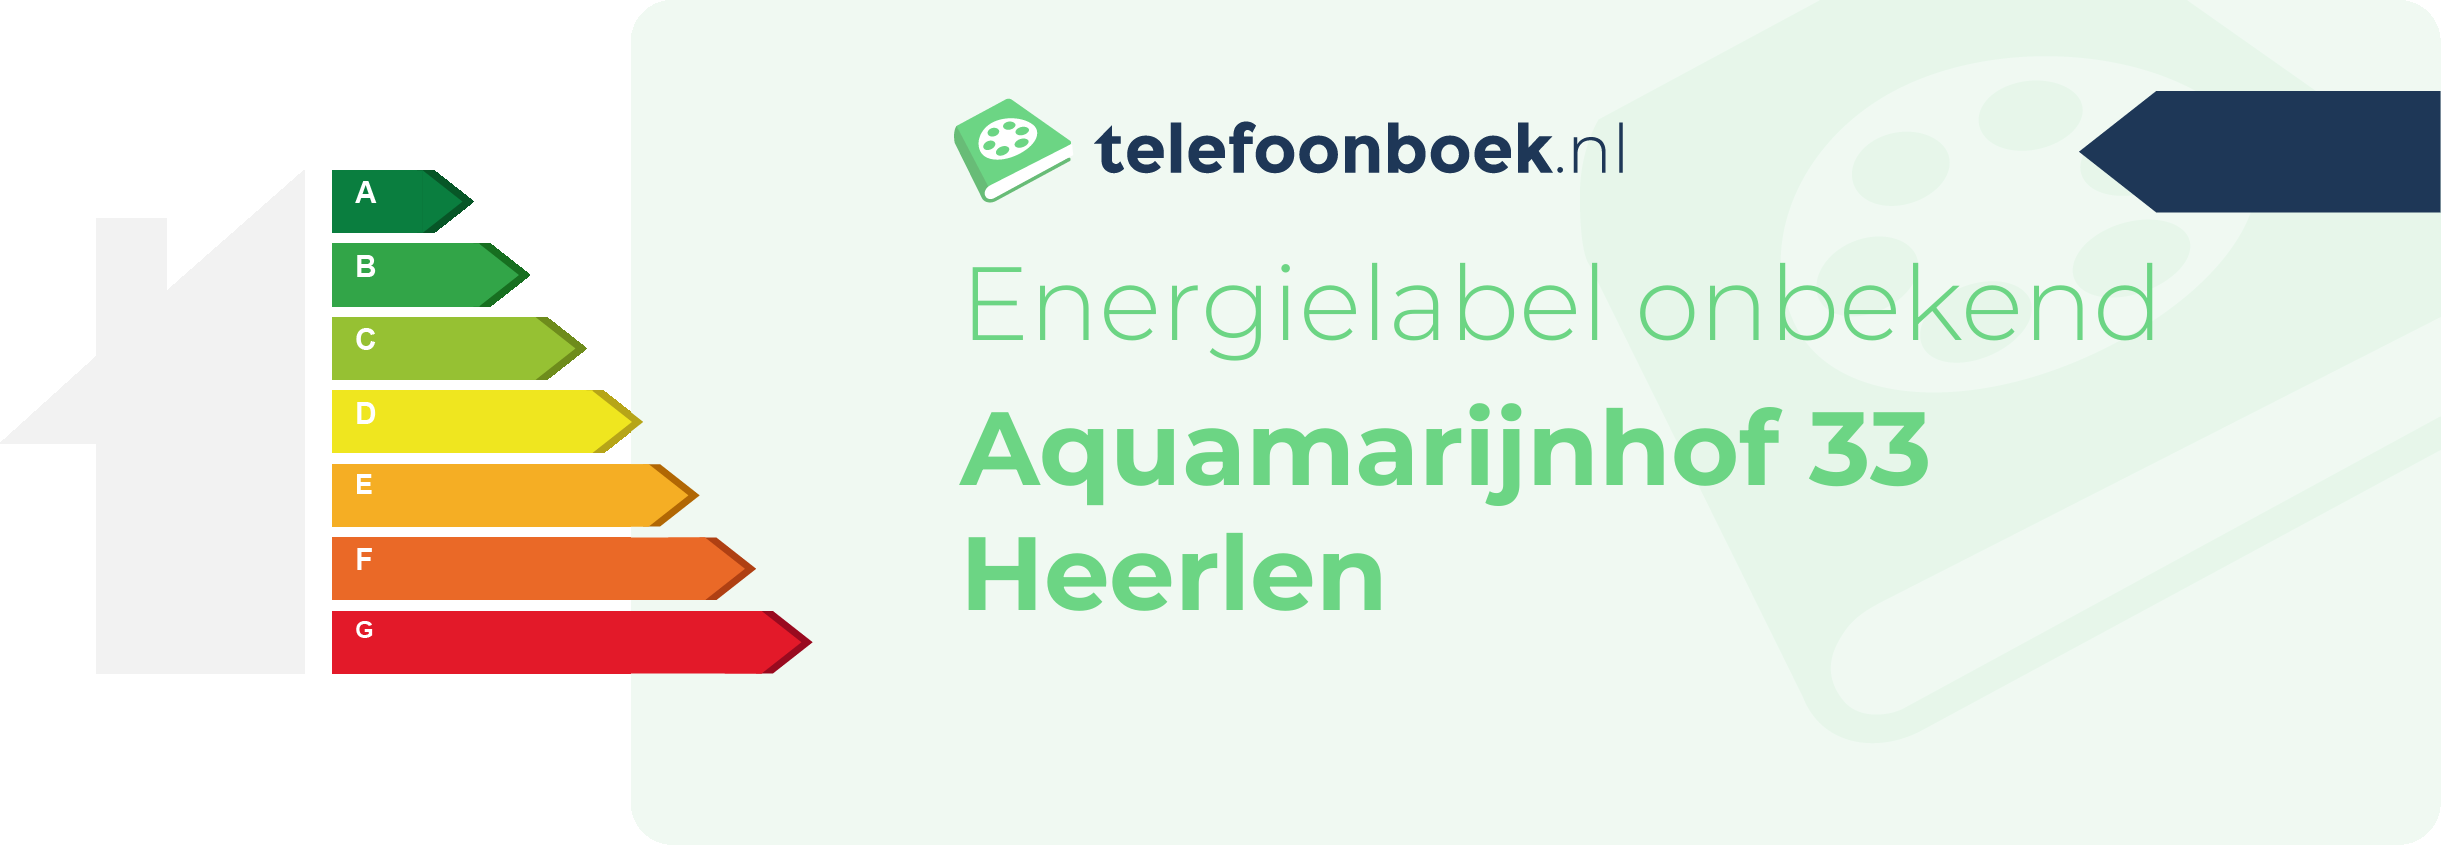 Energielabel Aquamarijnhof 33 Heerlen